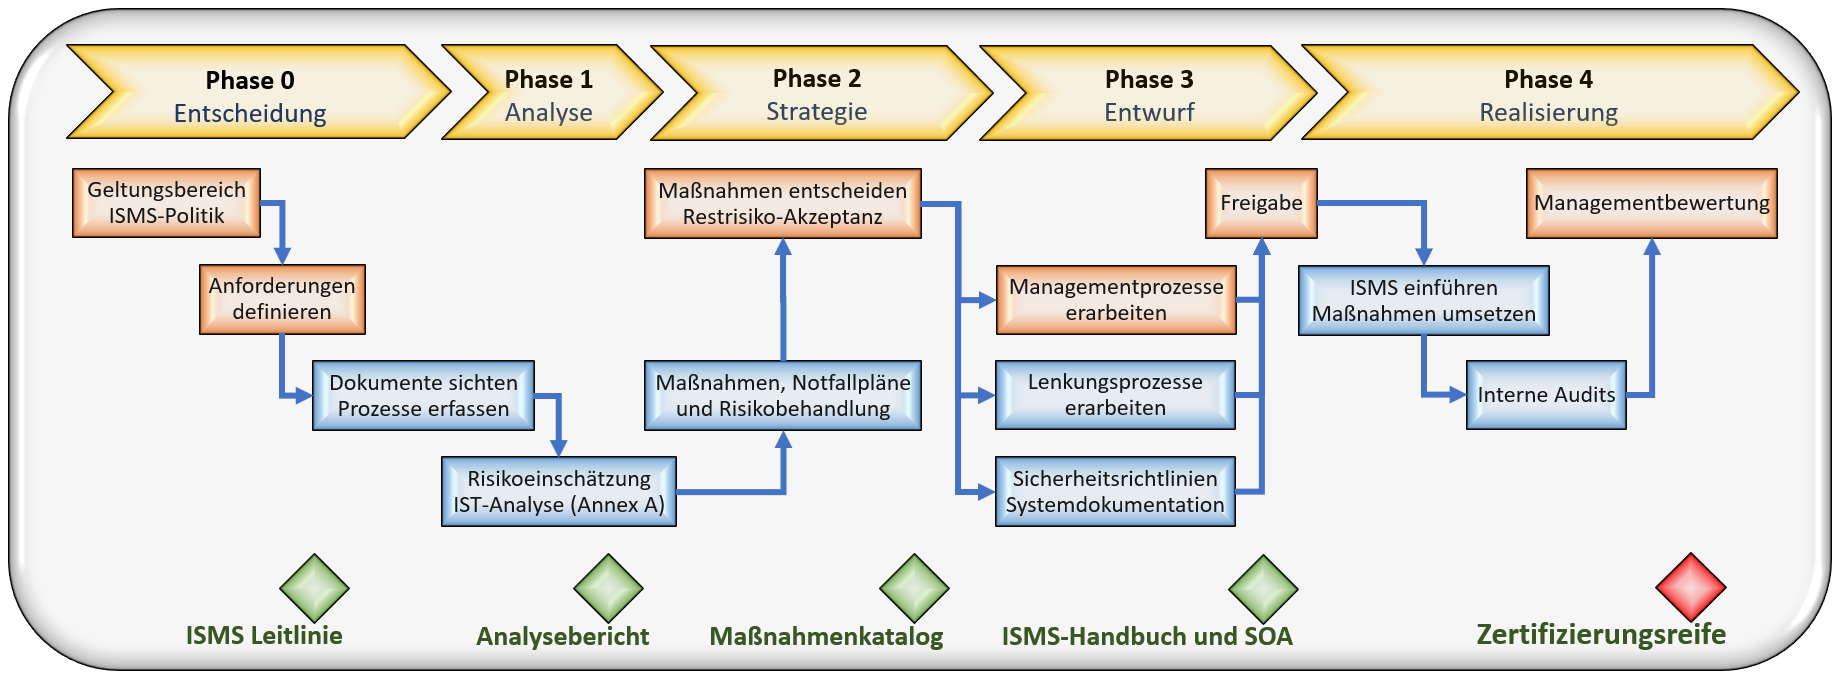 Prozessdiagramm: Implementierung eines Informationssicherheits-Managementsystems (ISMS)